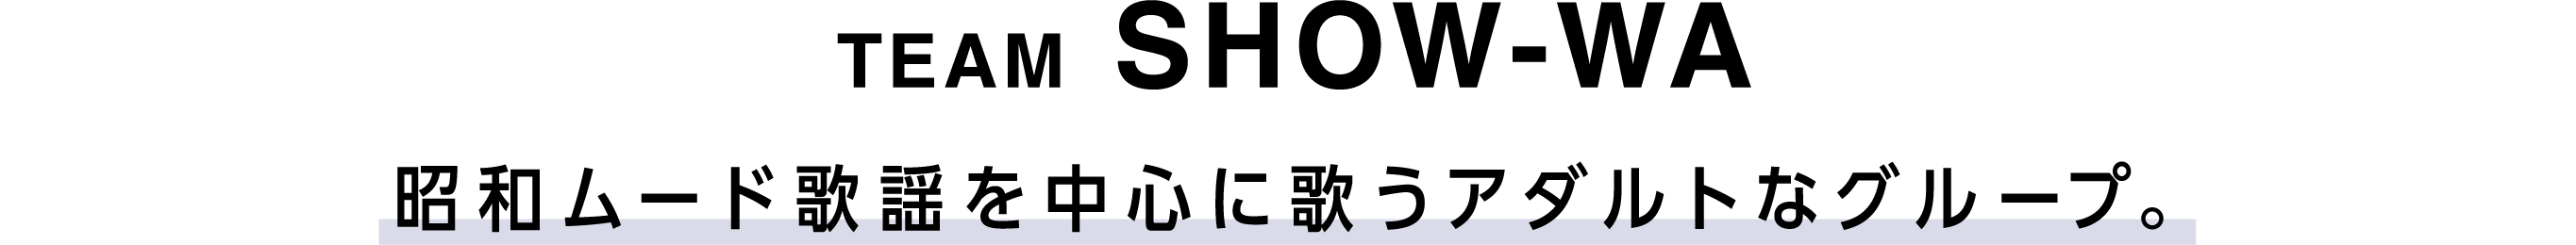 TEAM SHOW-WA 昭和ムード歌謡を中心に歌うアダルトなグループ。